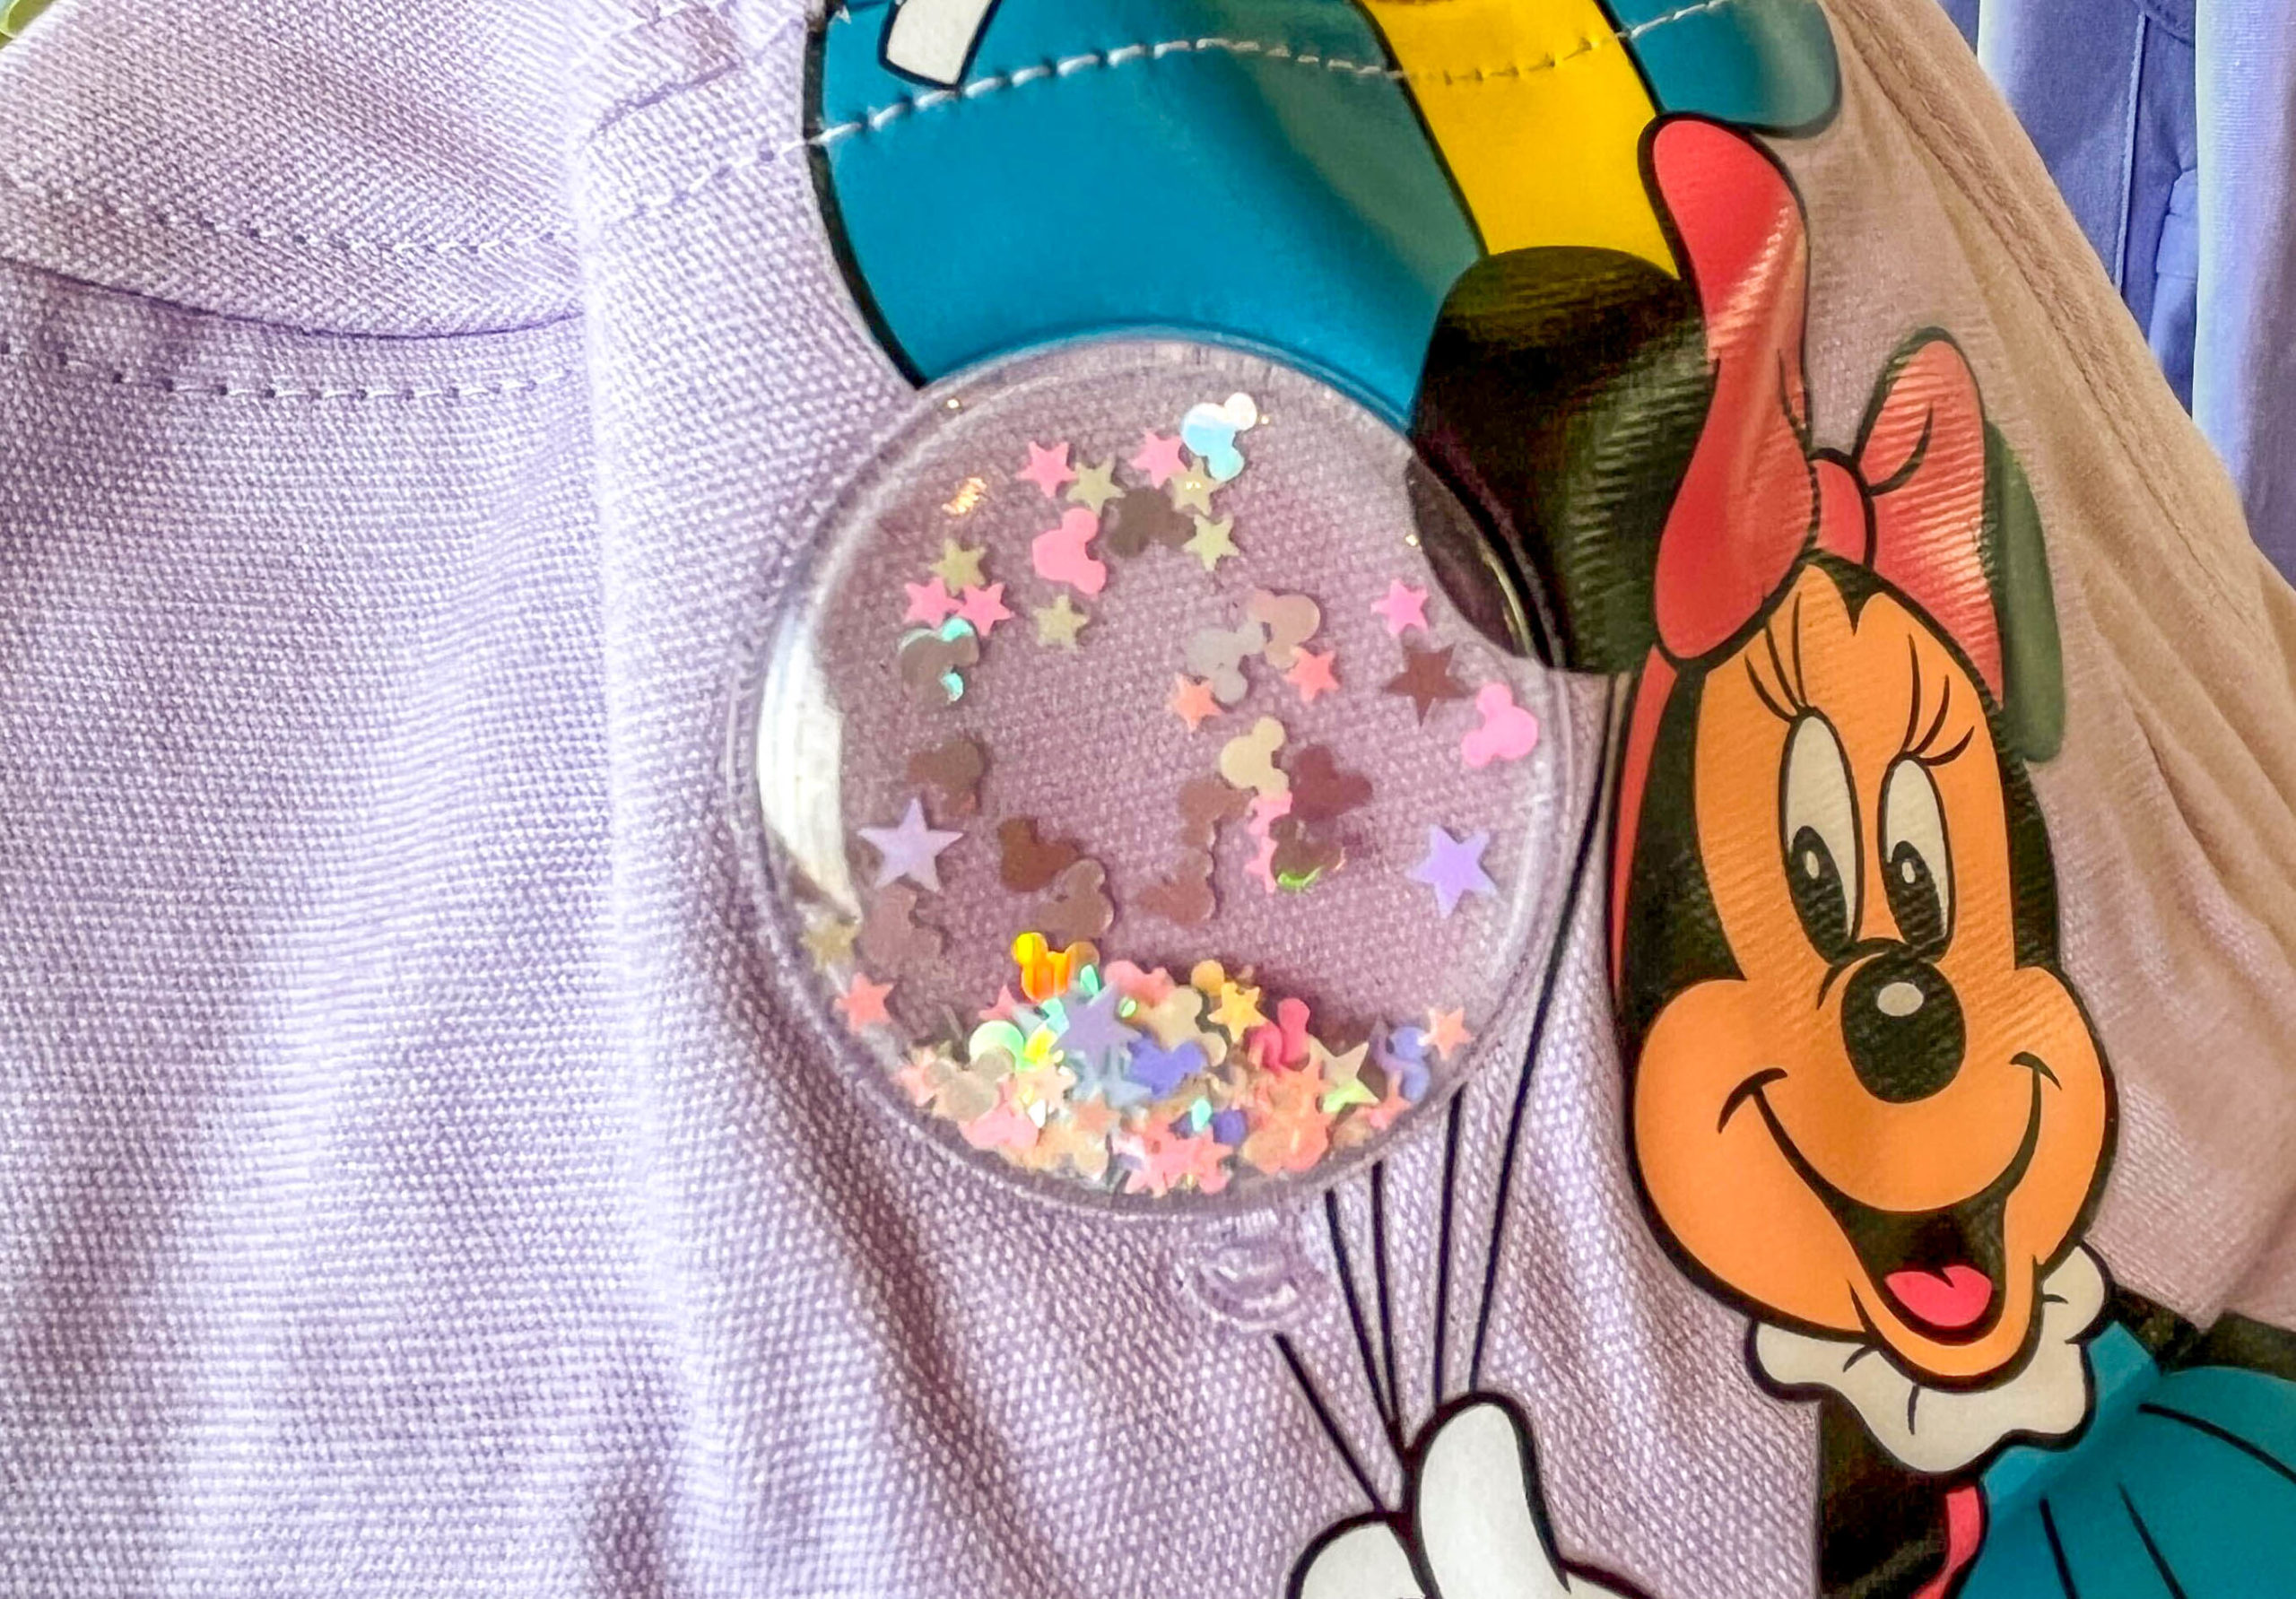 Minnie balloon details